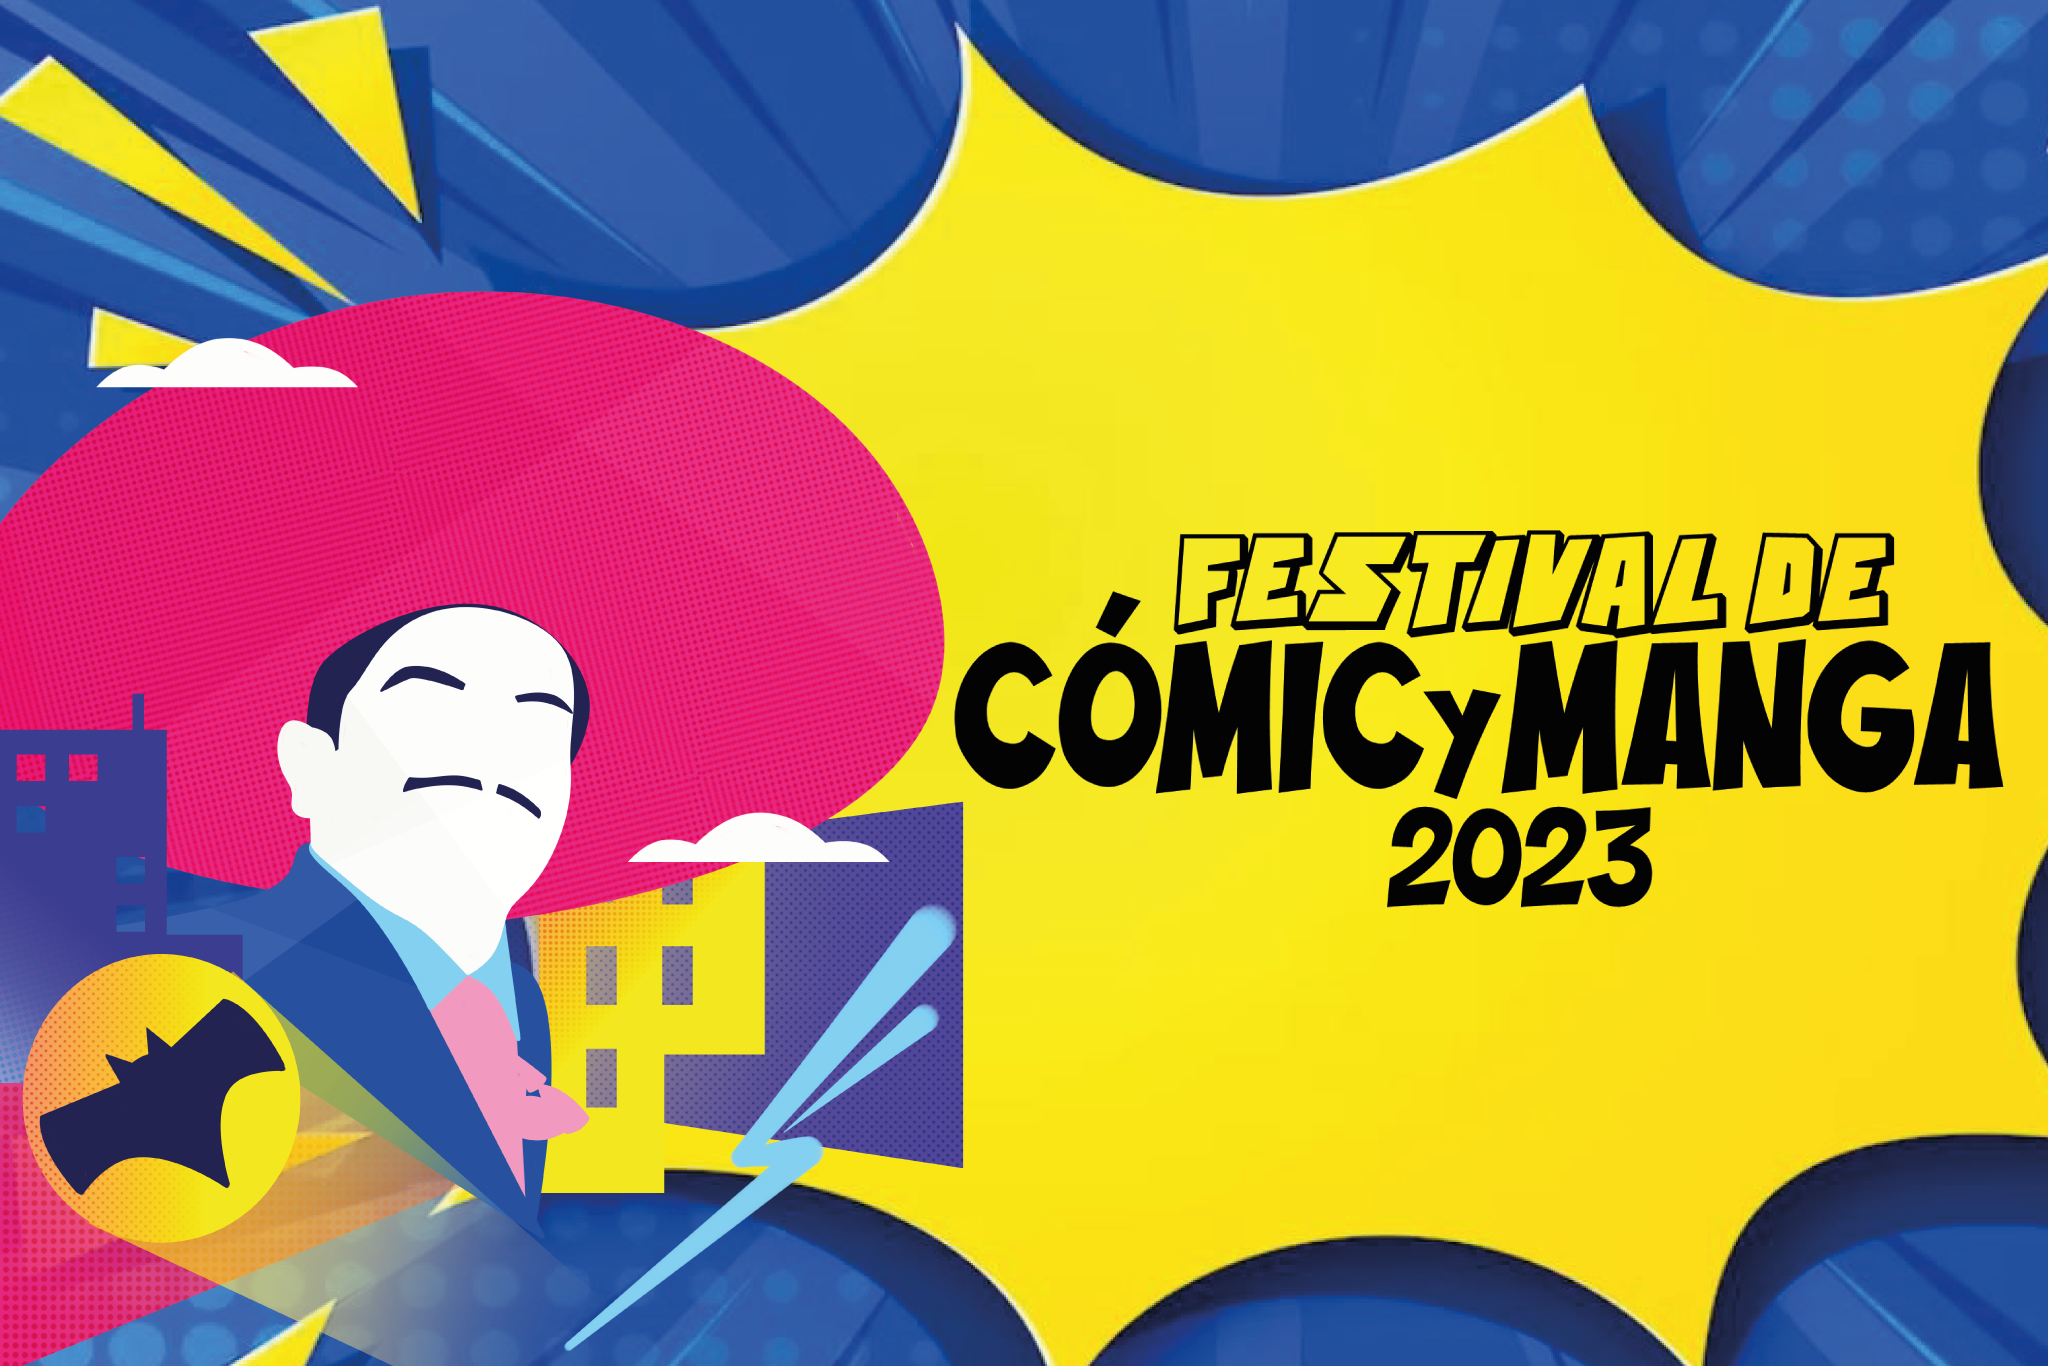 Con una decena de actividades, e invitados como Leyla Rangel y Pepeto, este jueves 28 inicia el Festival de Cómic y Manga en la Biblioteca Central Estatal.